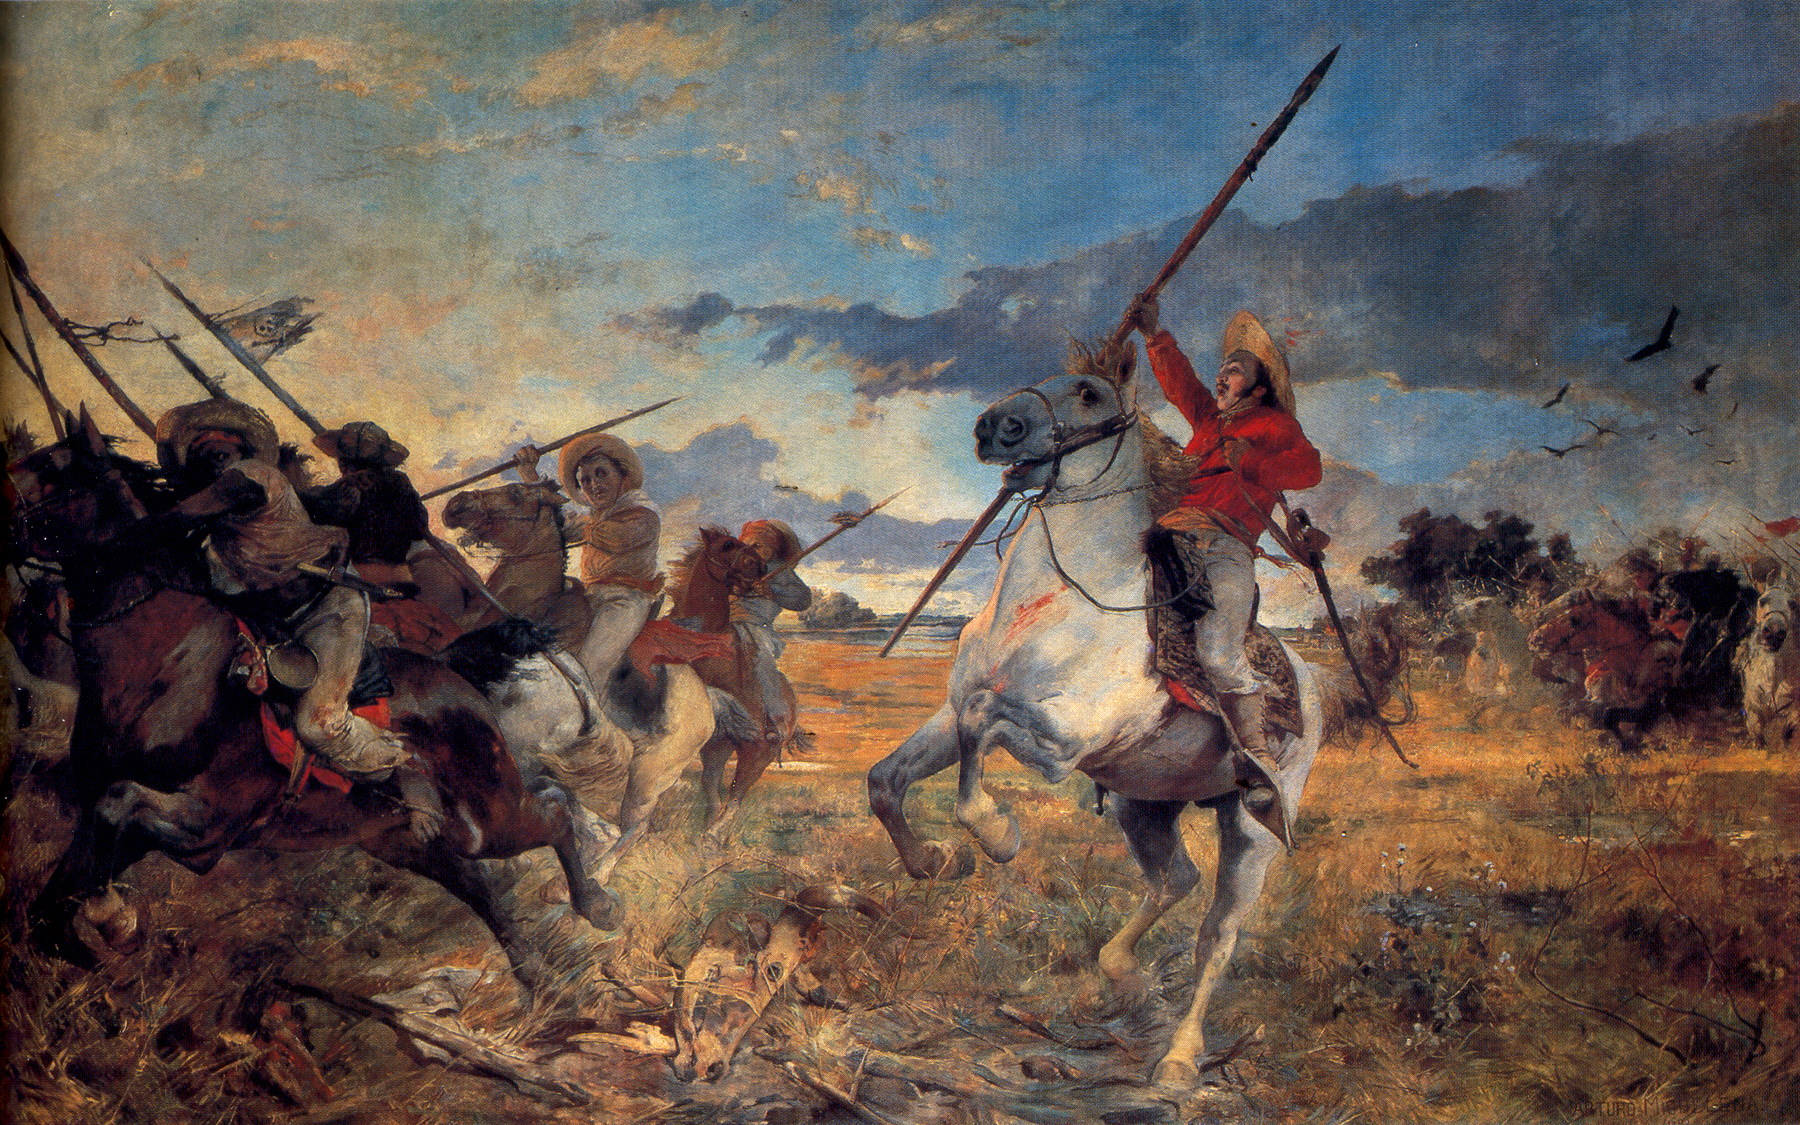 "Vuelvan caras", cuadro al óleo sobre tela 300 x 460&nbsp;cm (1890) de [[Arturo Michelena